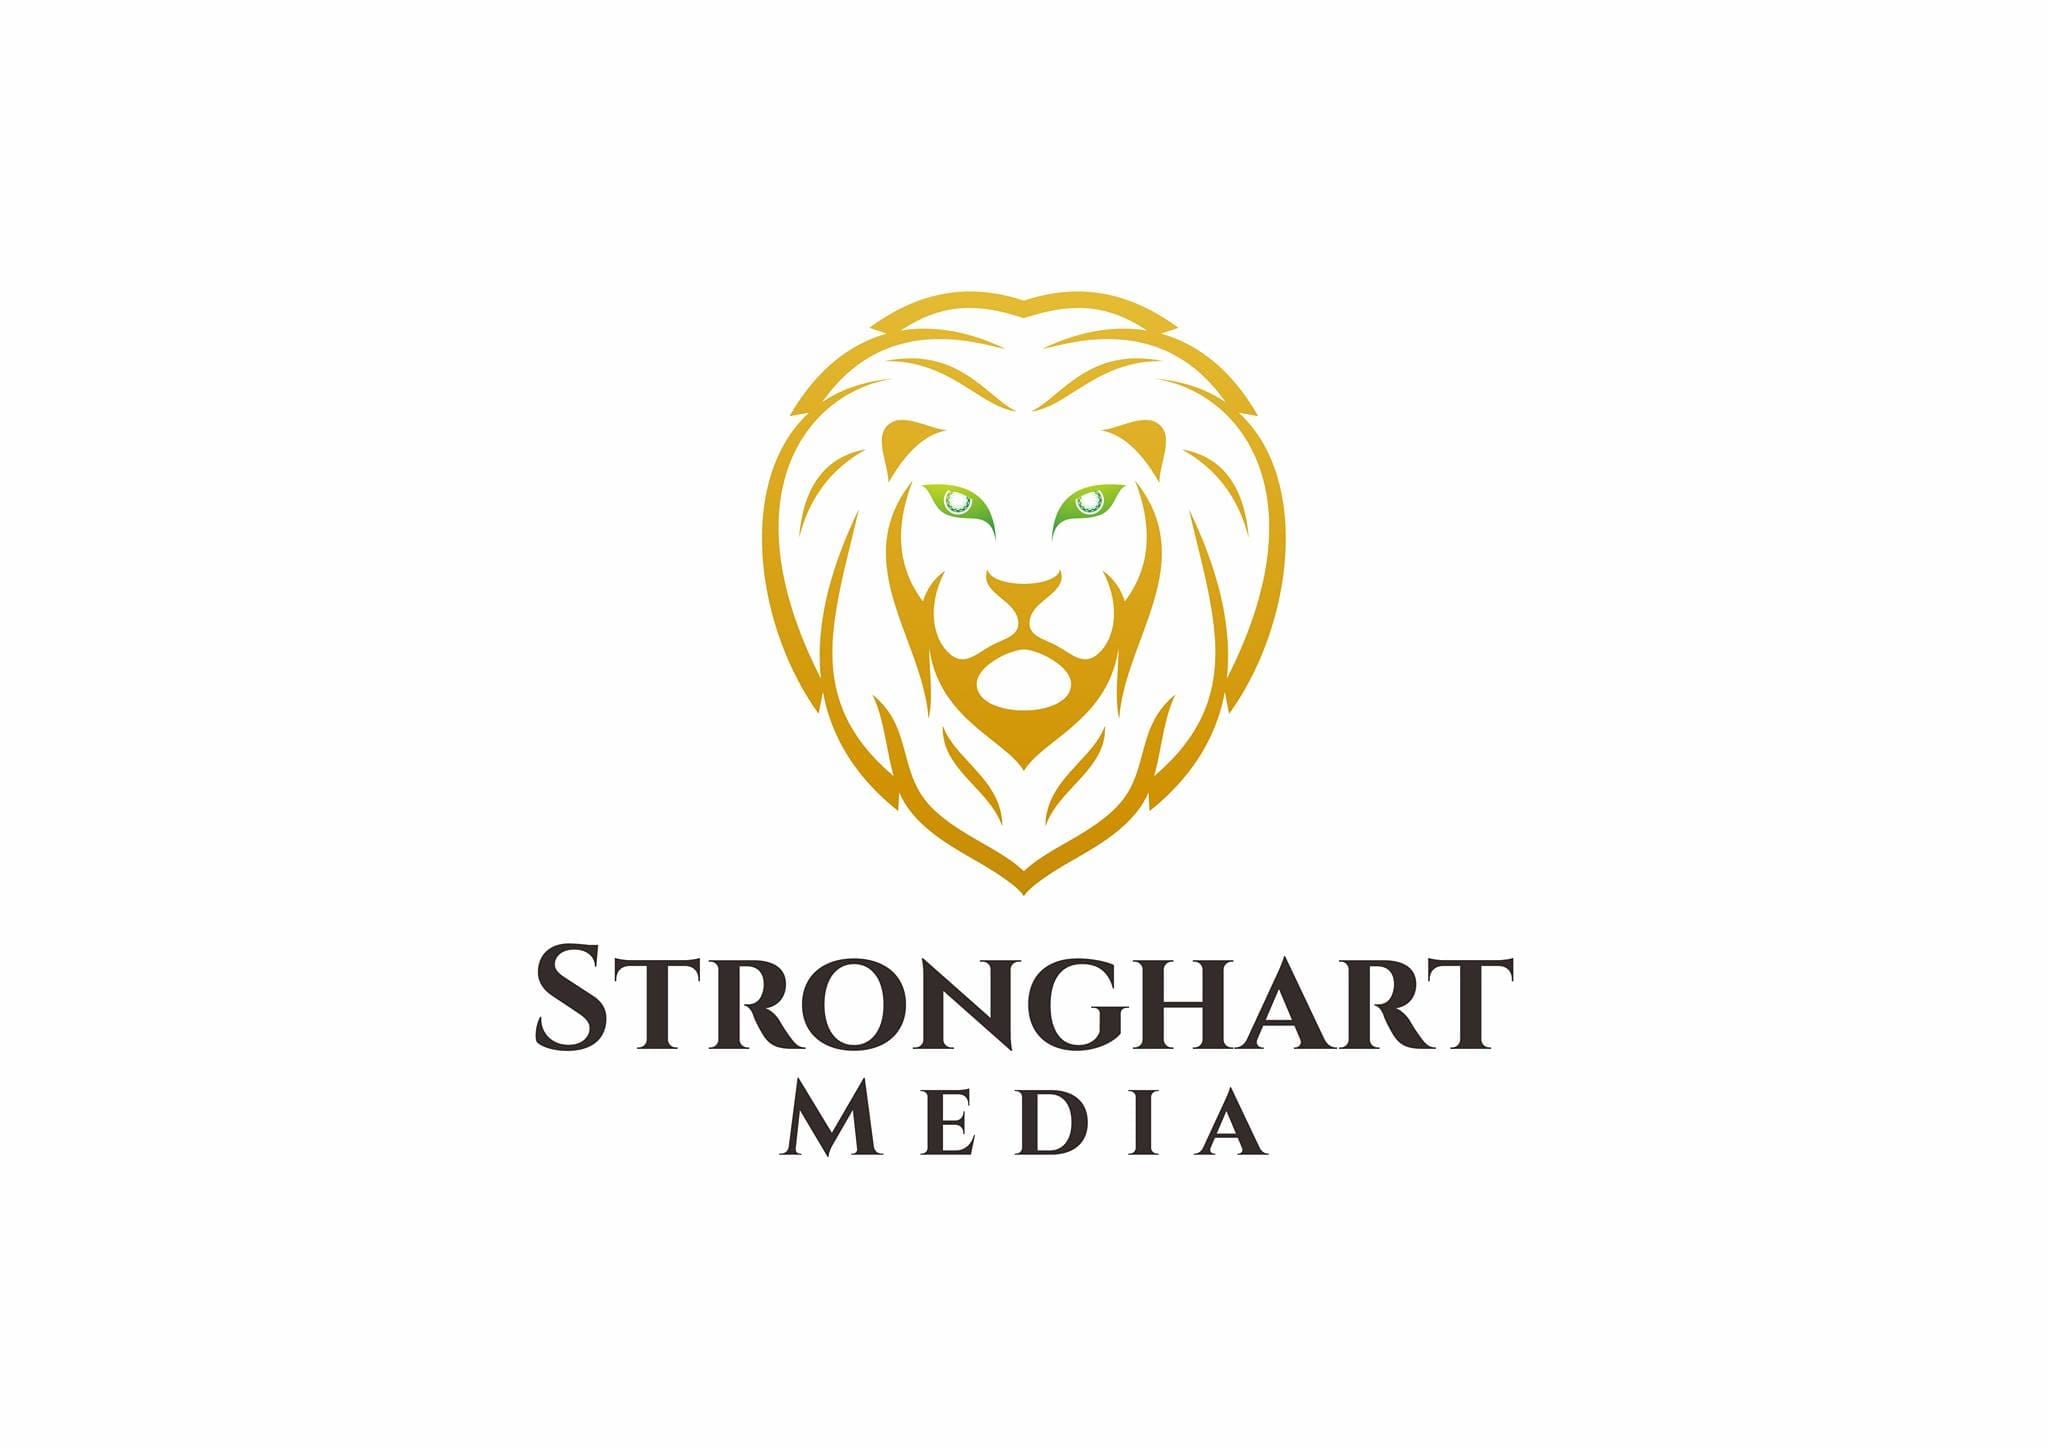 Stronghart Media